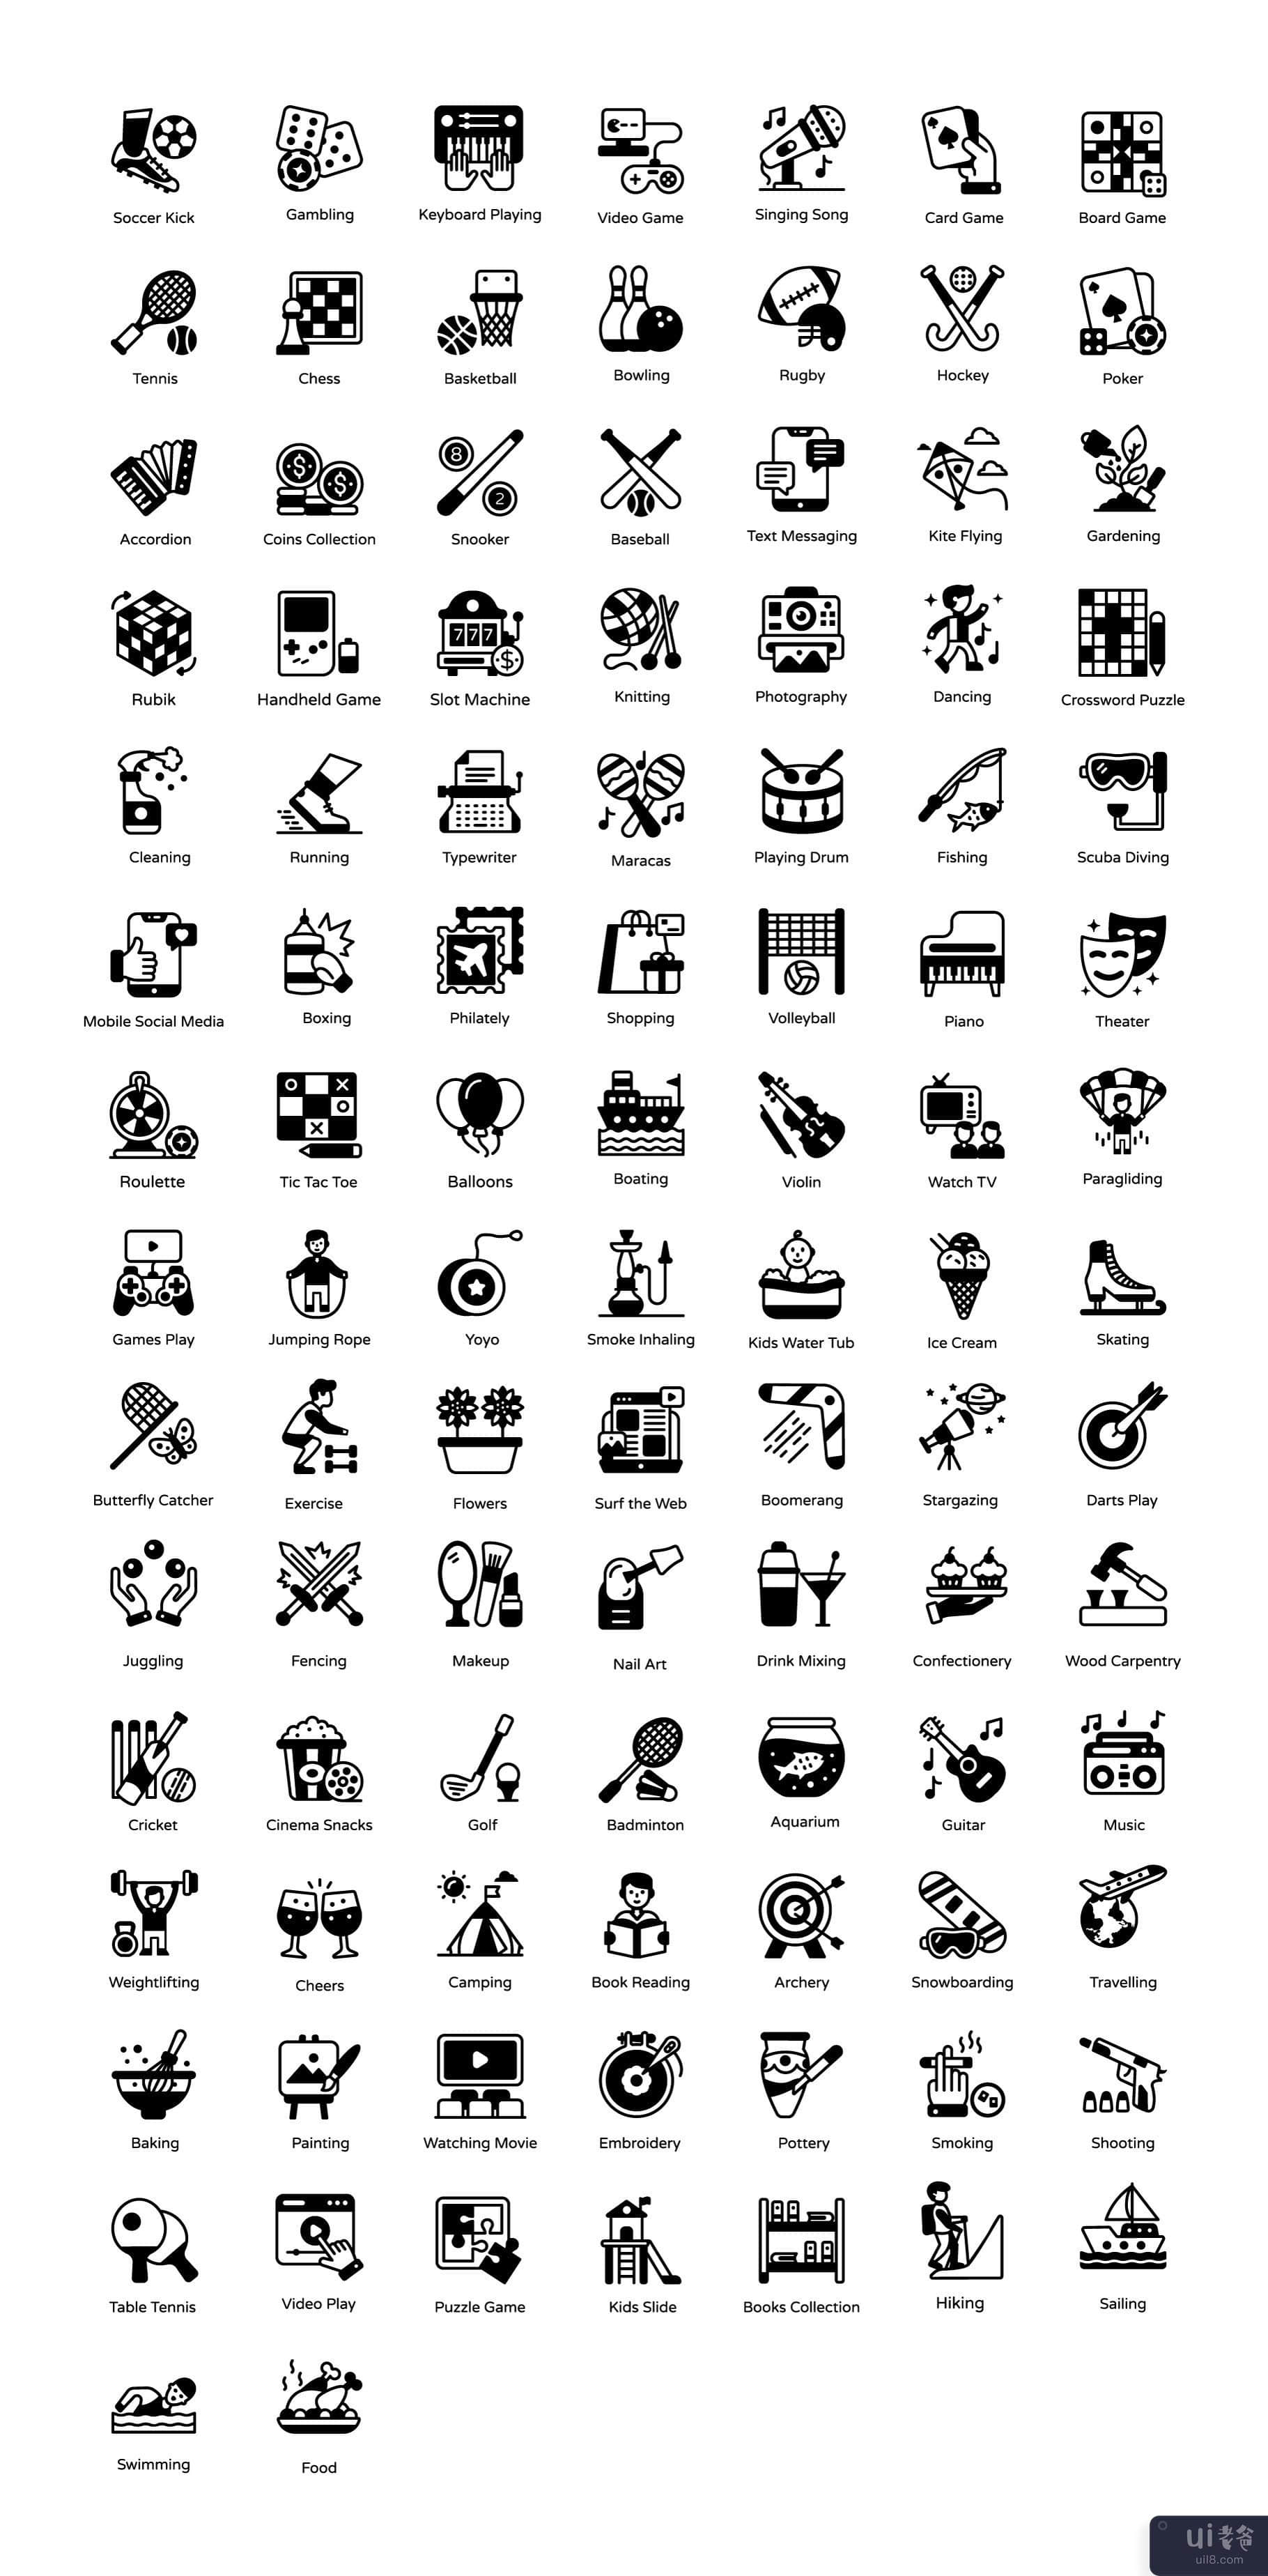 爱好和兴趣实体图标(Hobbies and Interests Solid Icons)插图